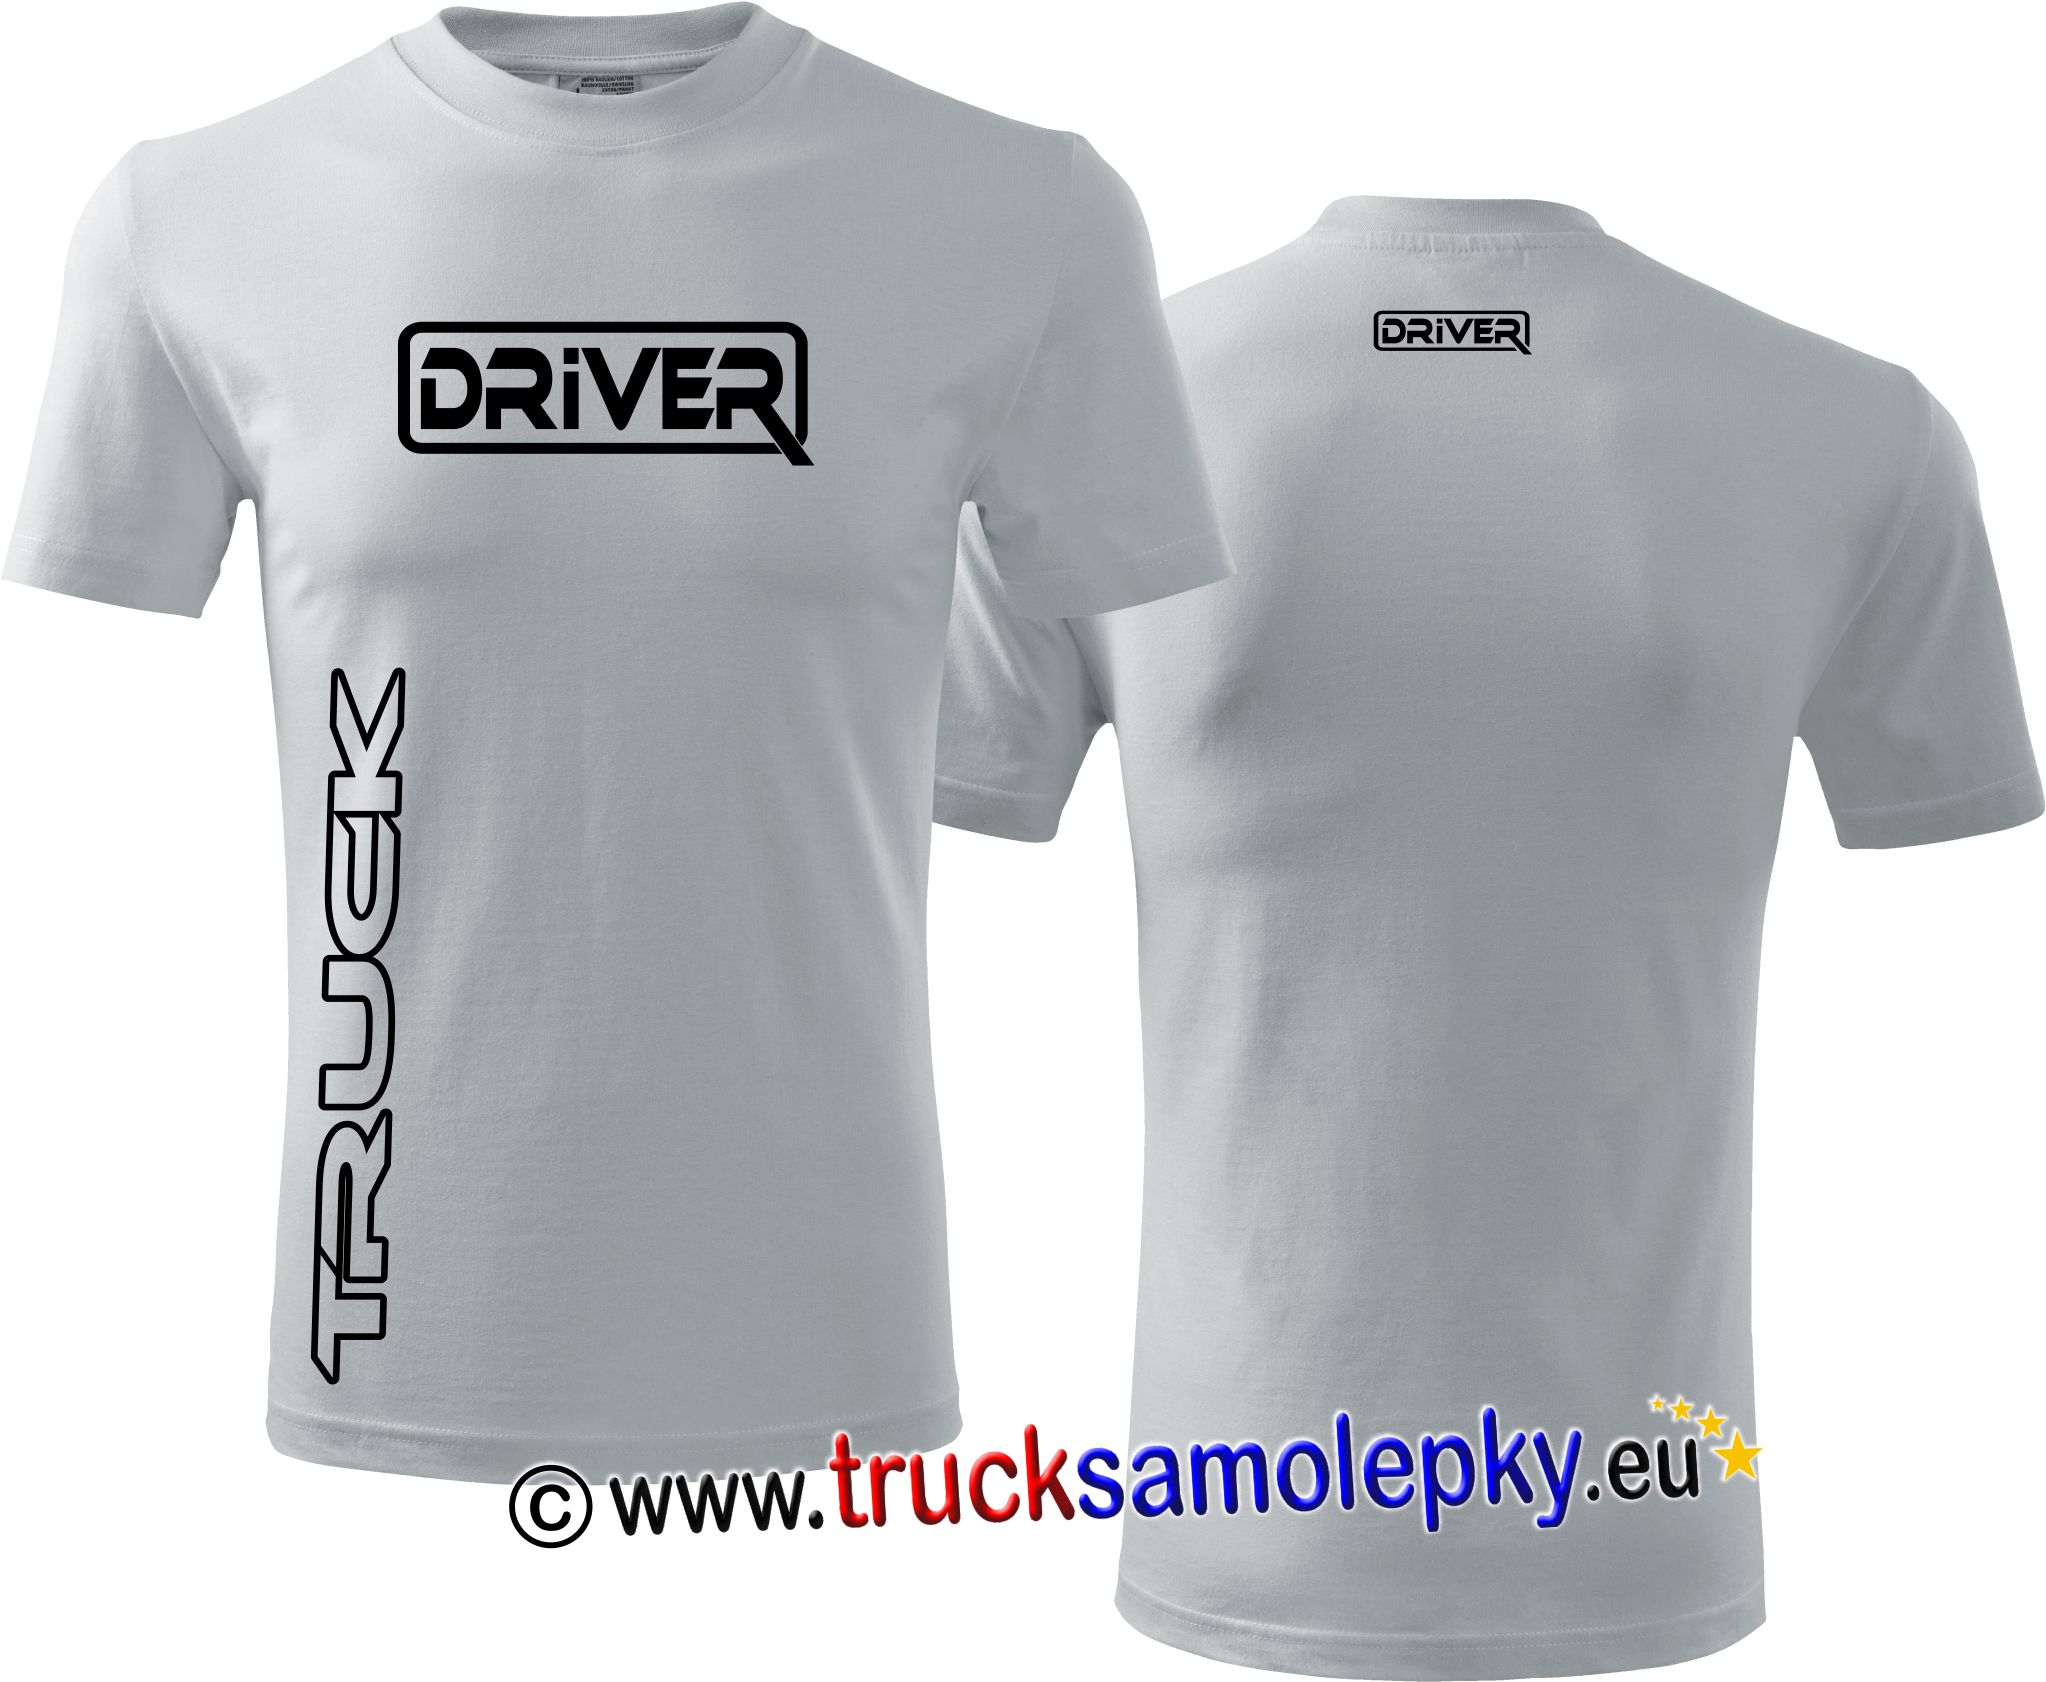 Tričko TRUCK DRIVER v barvě bílé